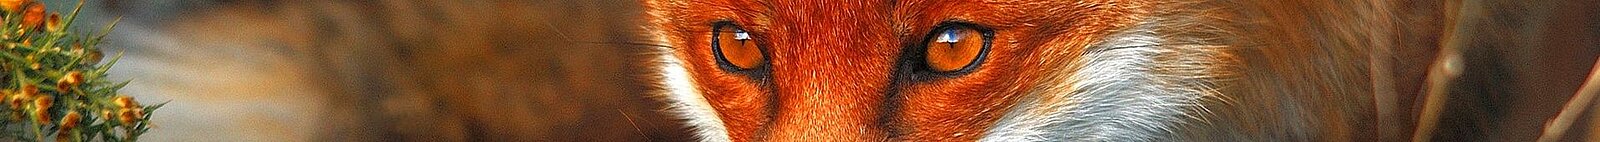 Bildausschnitt mit den Augen eines Rotfuchses